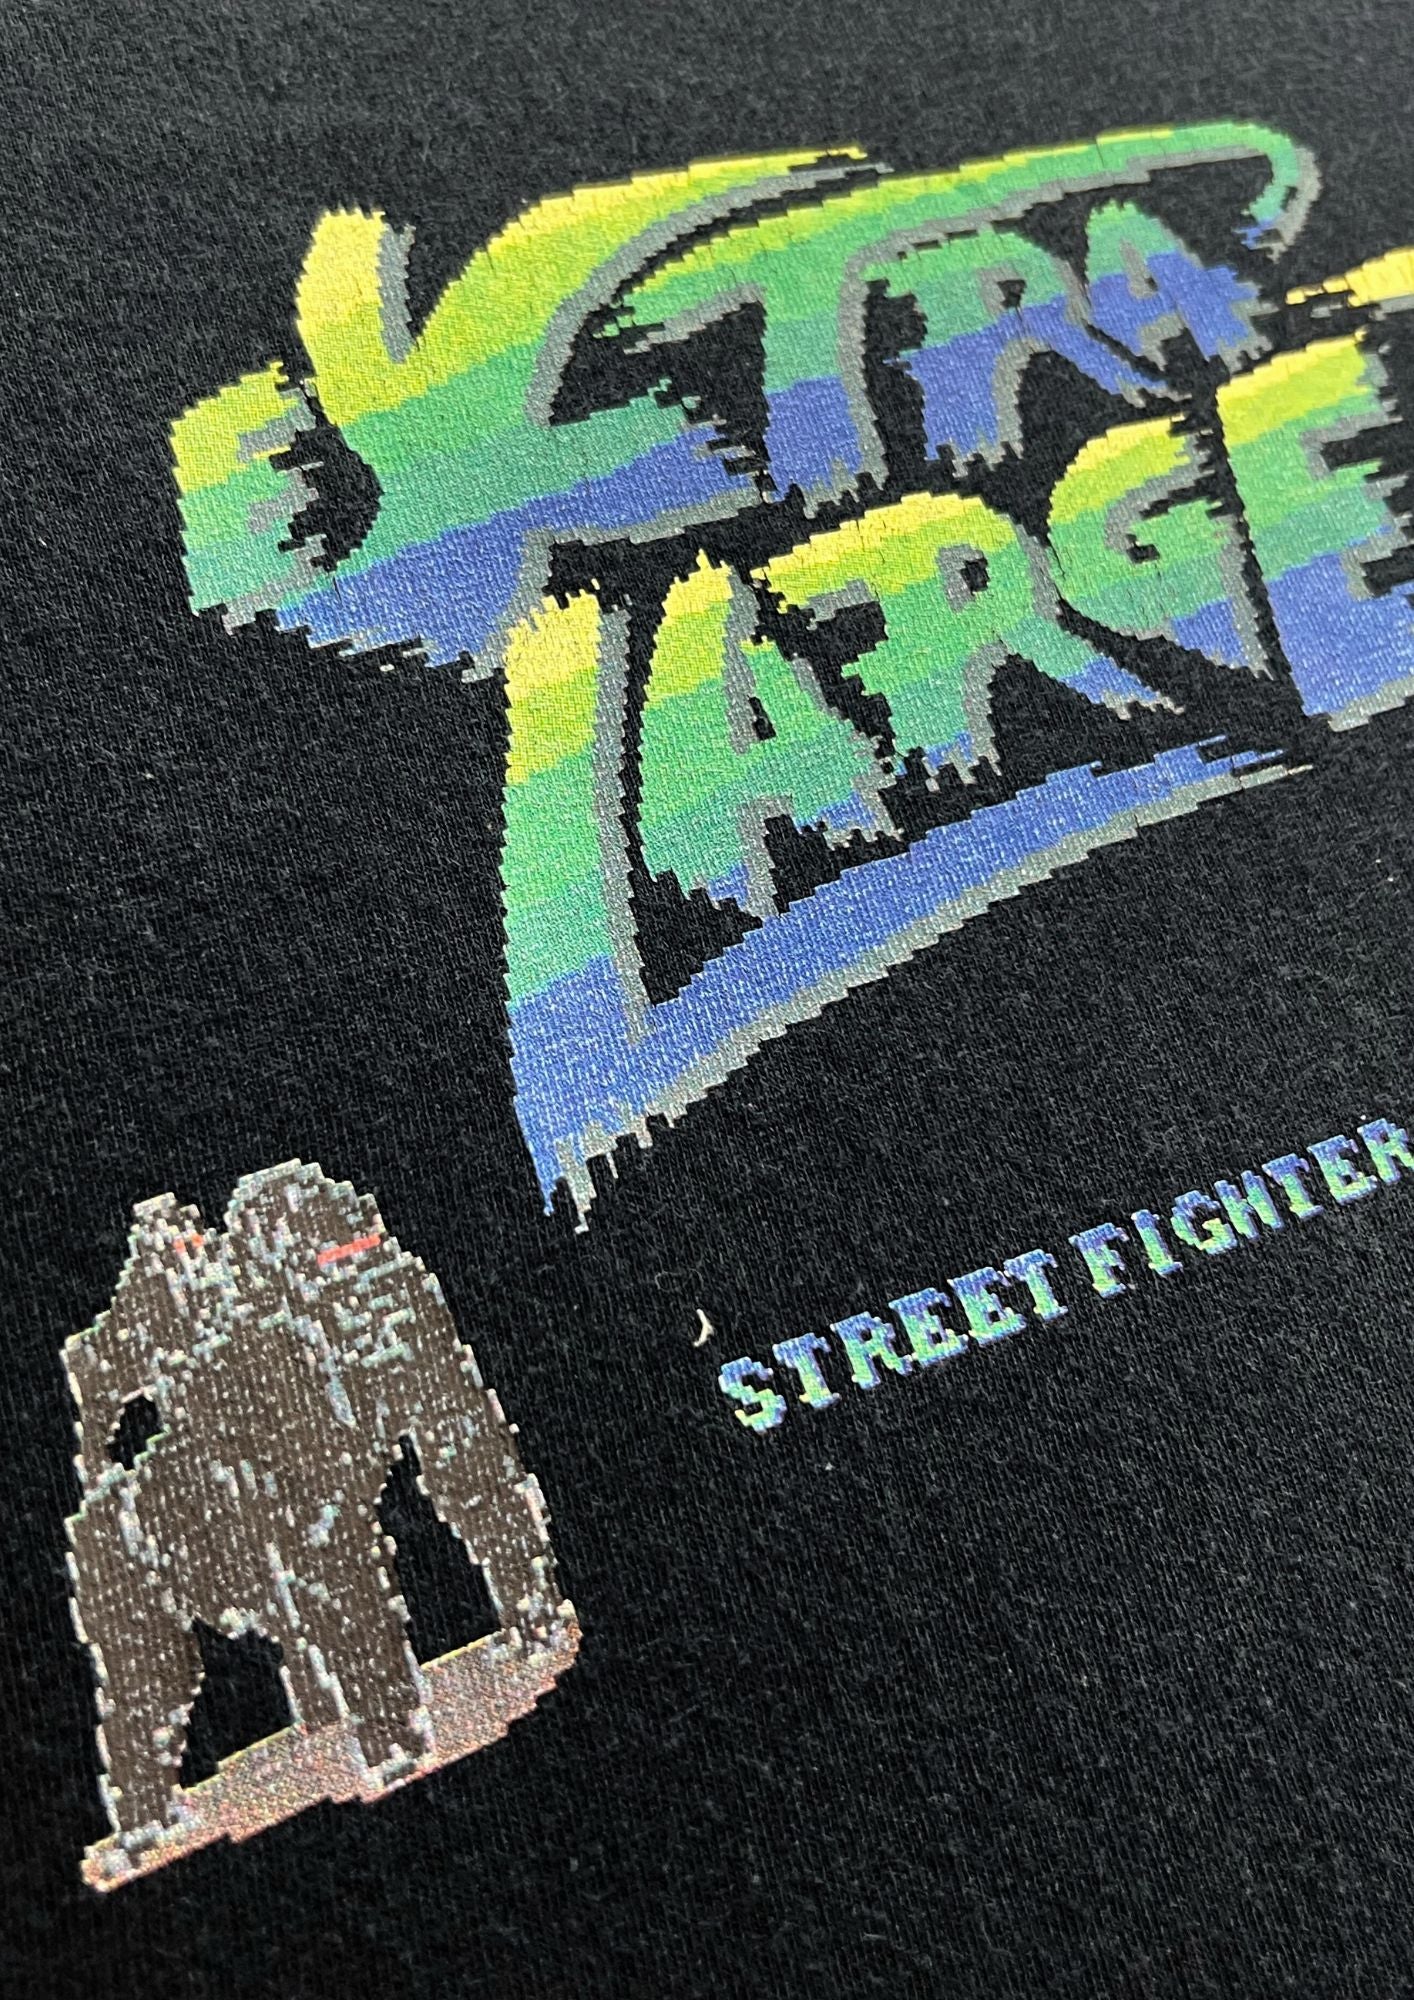 2017 Street Fighter x X-Large Ken T-shirt